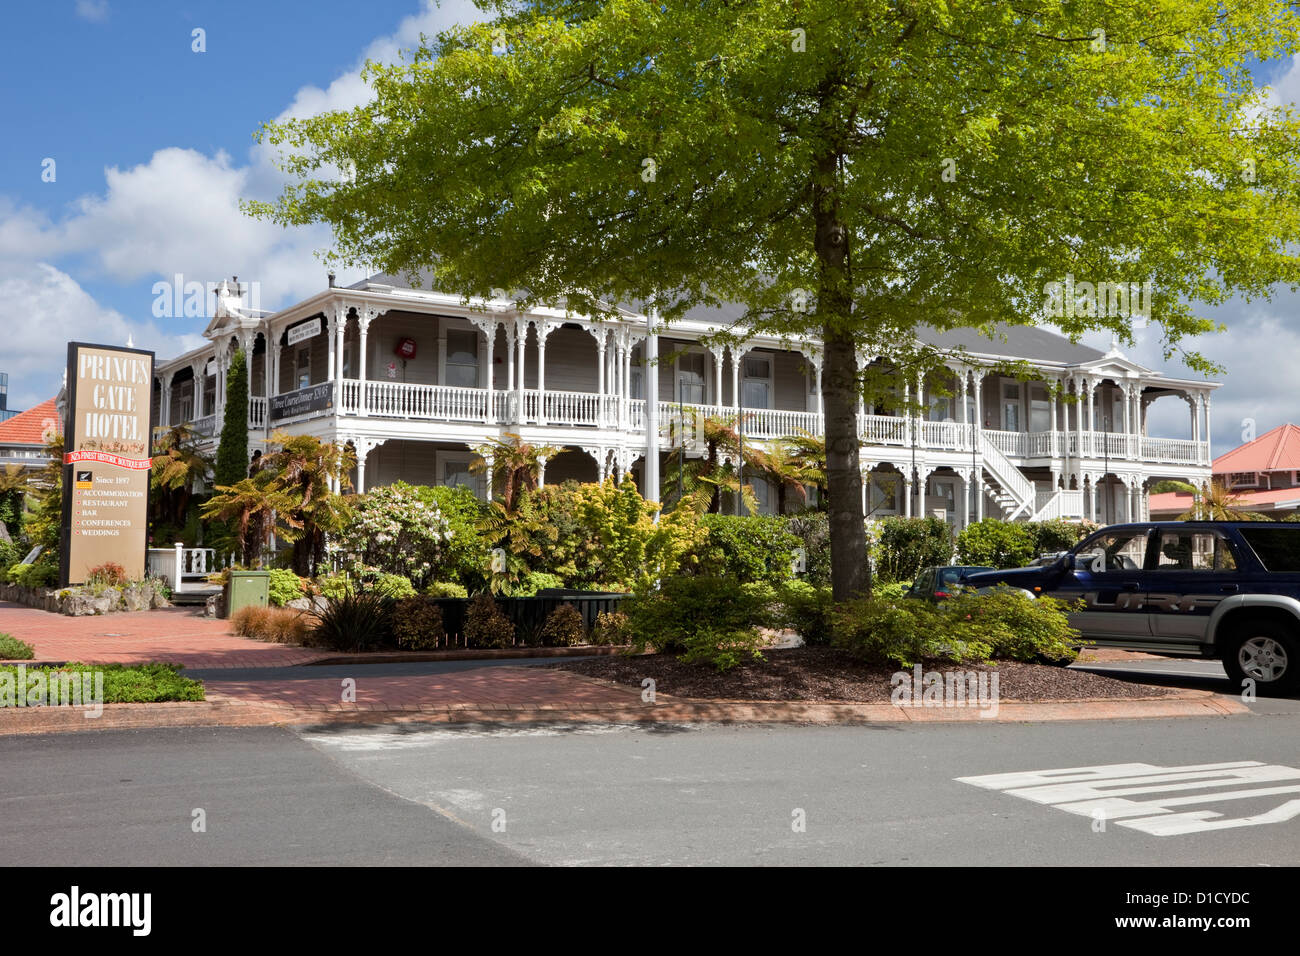 La NOUVELLE ZELANDE, Princes Gate Hotel, Rotorua, île du nord, en Nouvelle-Zélande. Banque D'Images